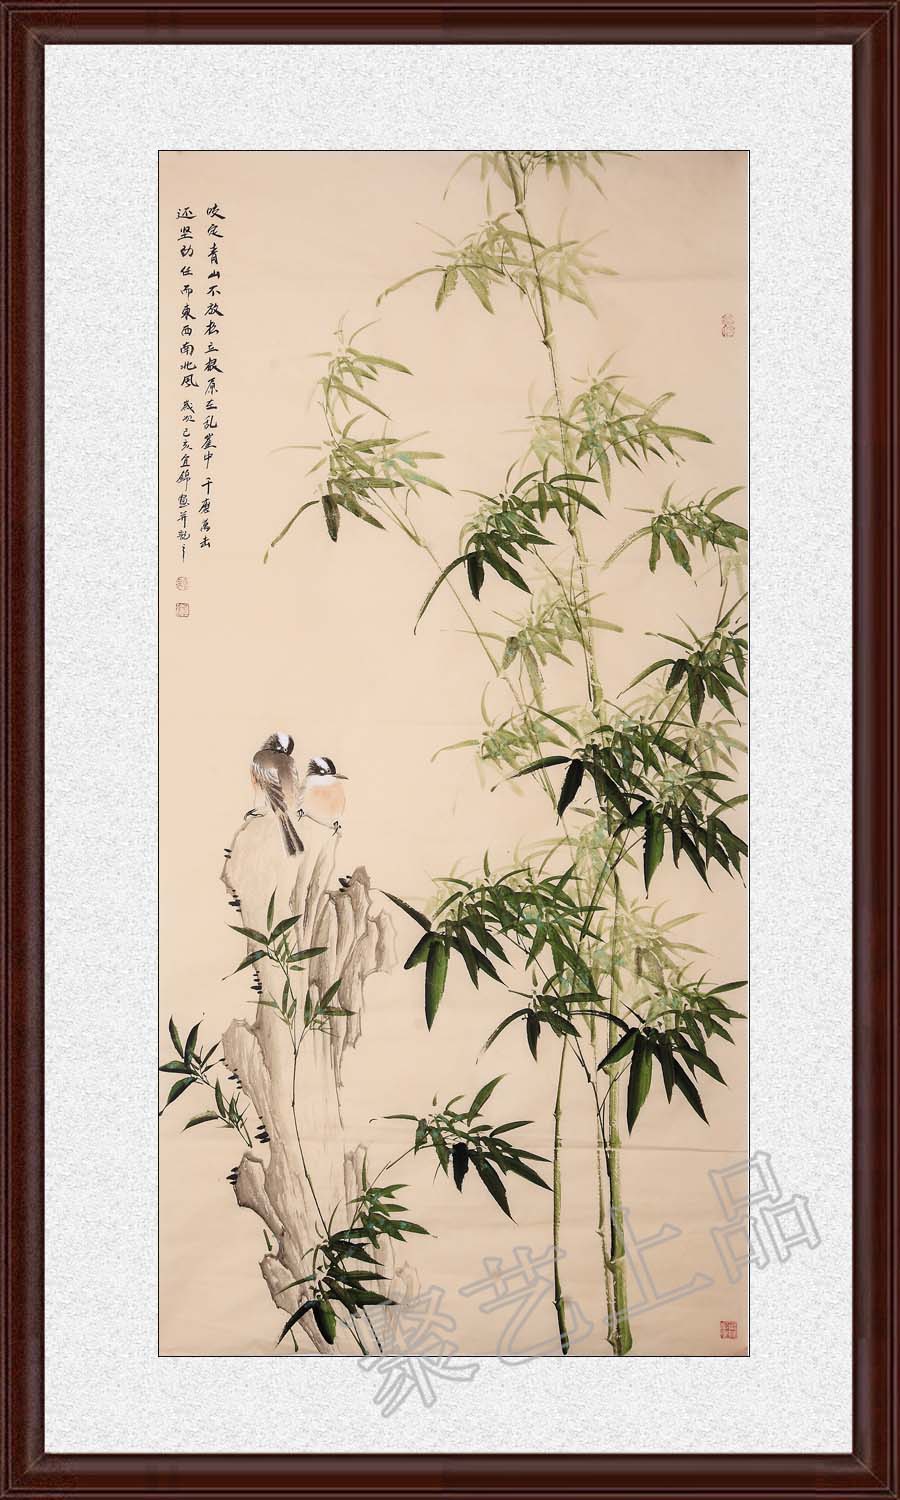 当代画竹子的画家许宜锦 她的竹子画让人百看不厌